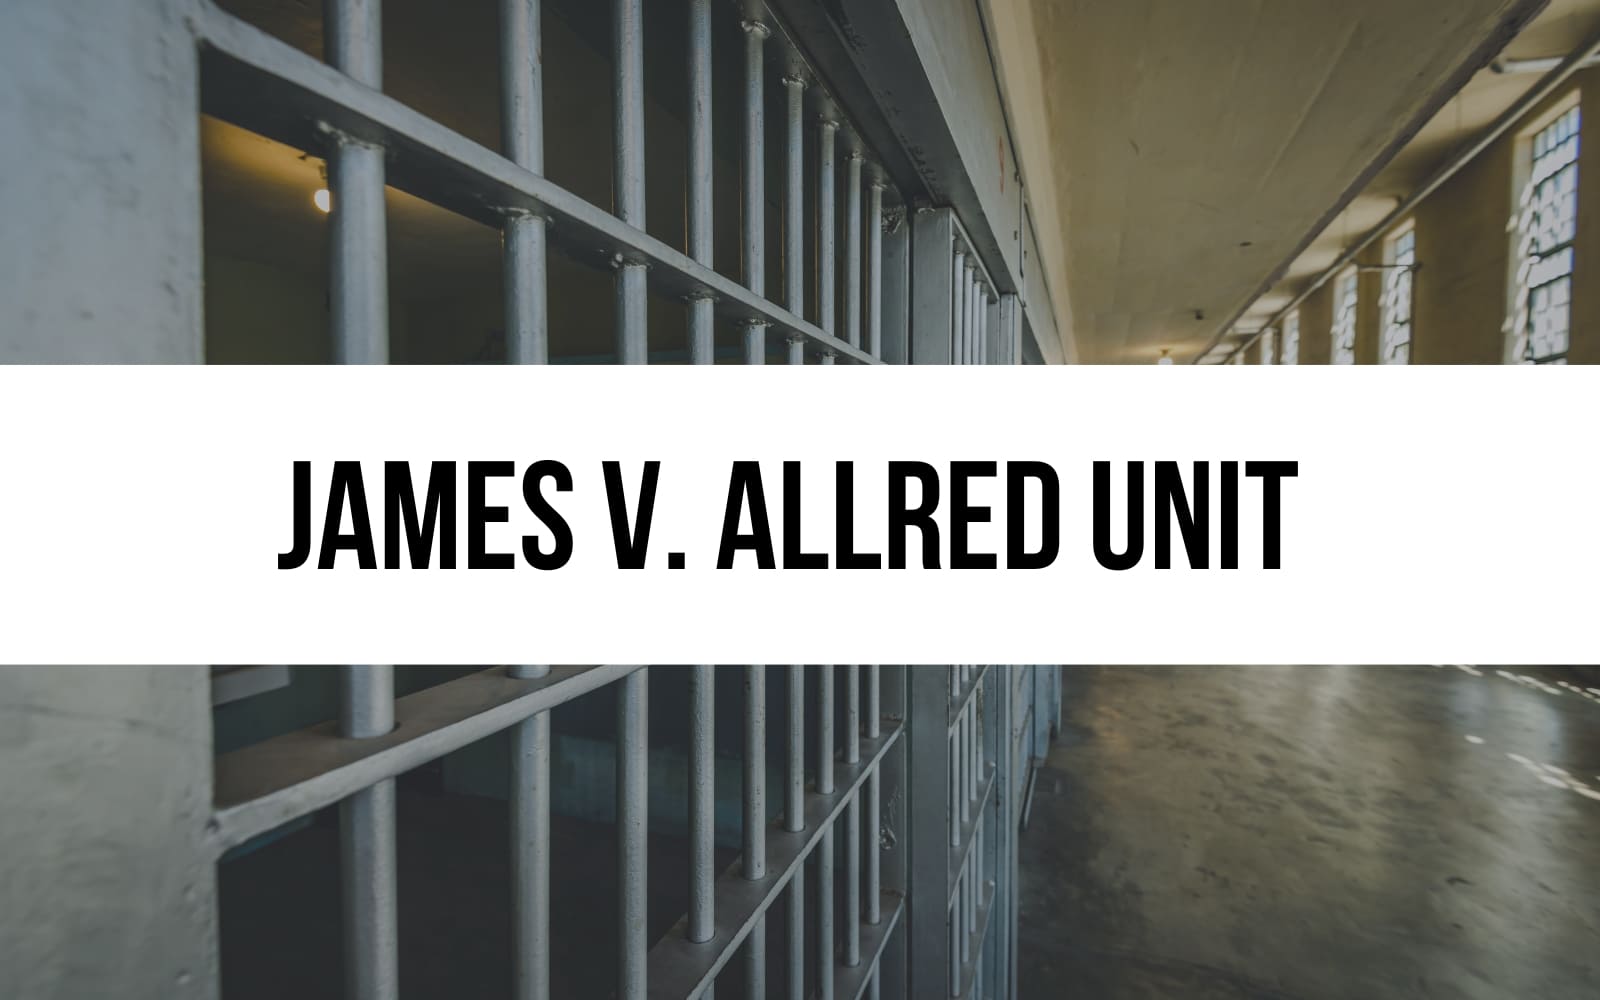 James V. Allred Unit